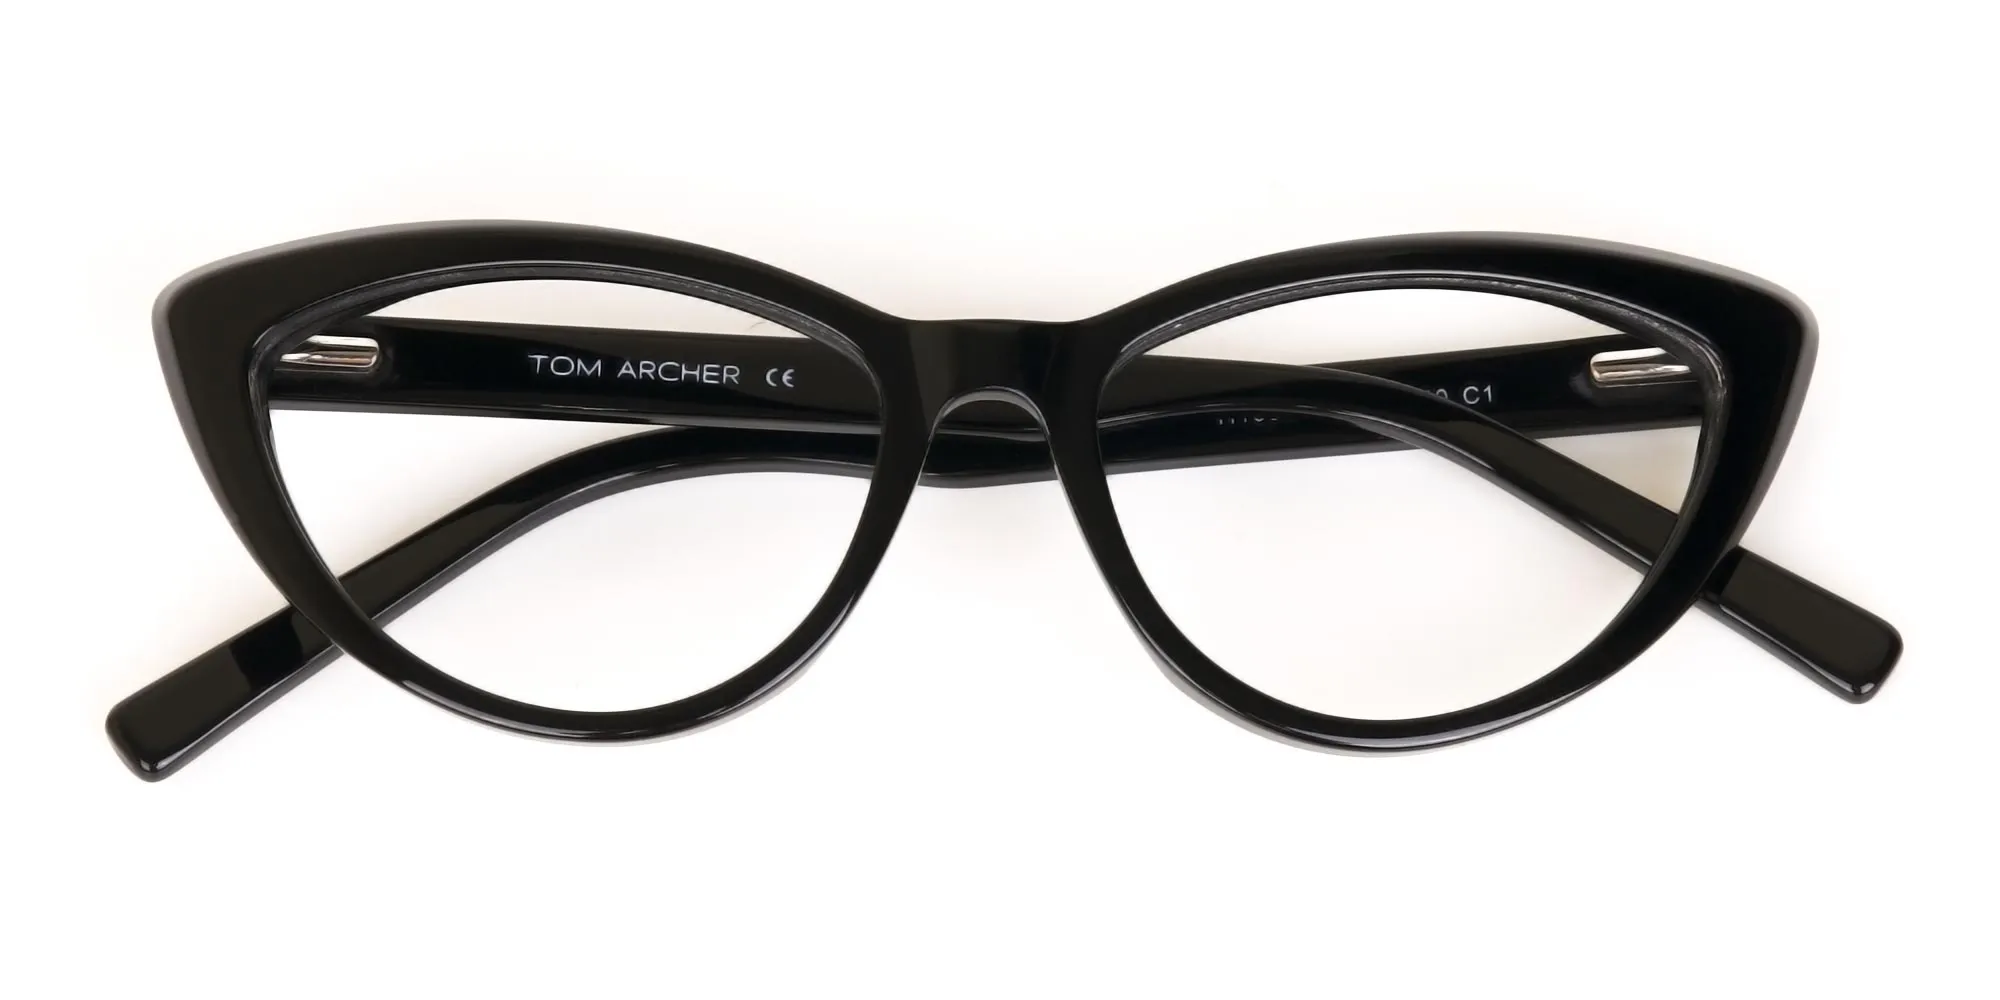 Black Cat Eye Glasses Frame For Women-2